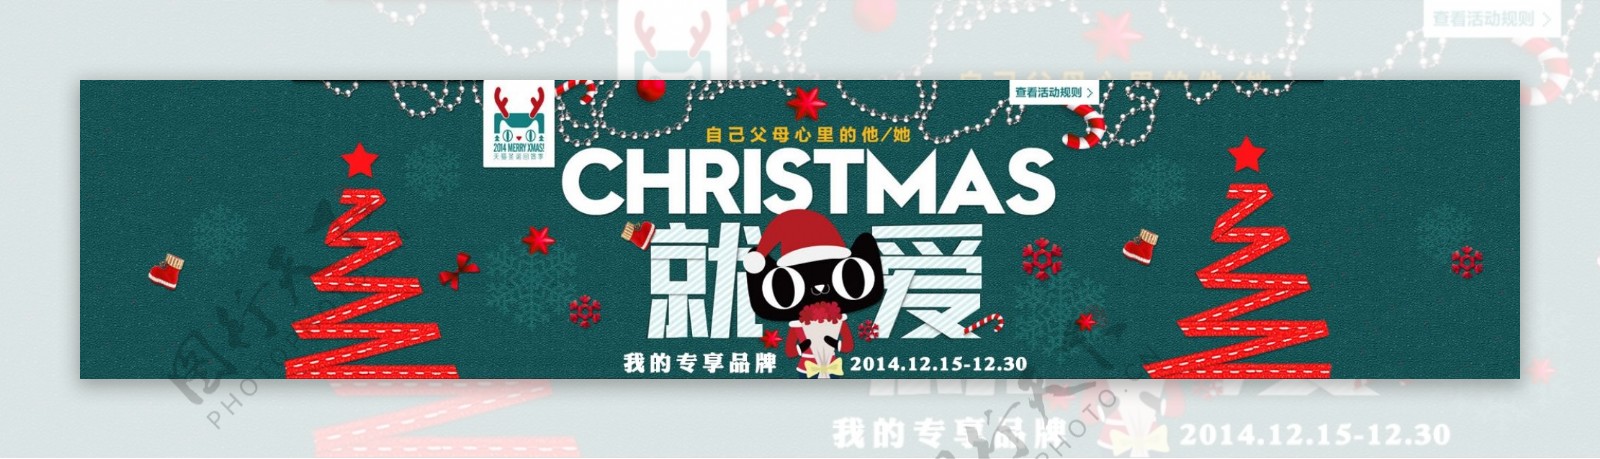 圣诞节海报淘宝电商banner